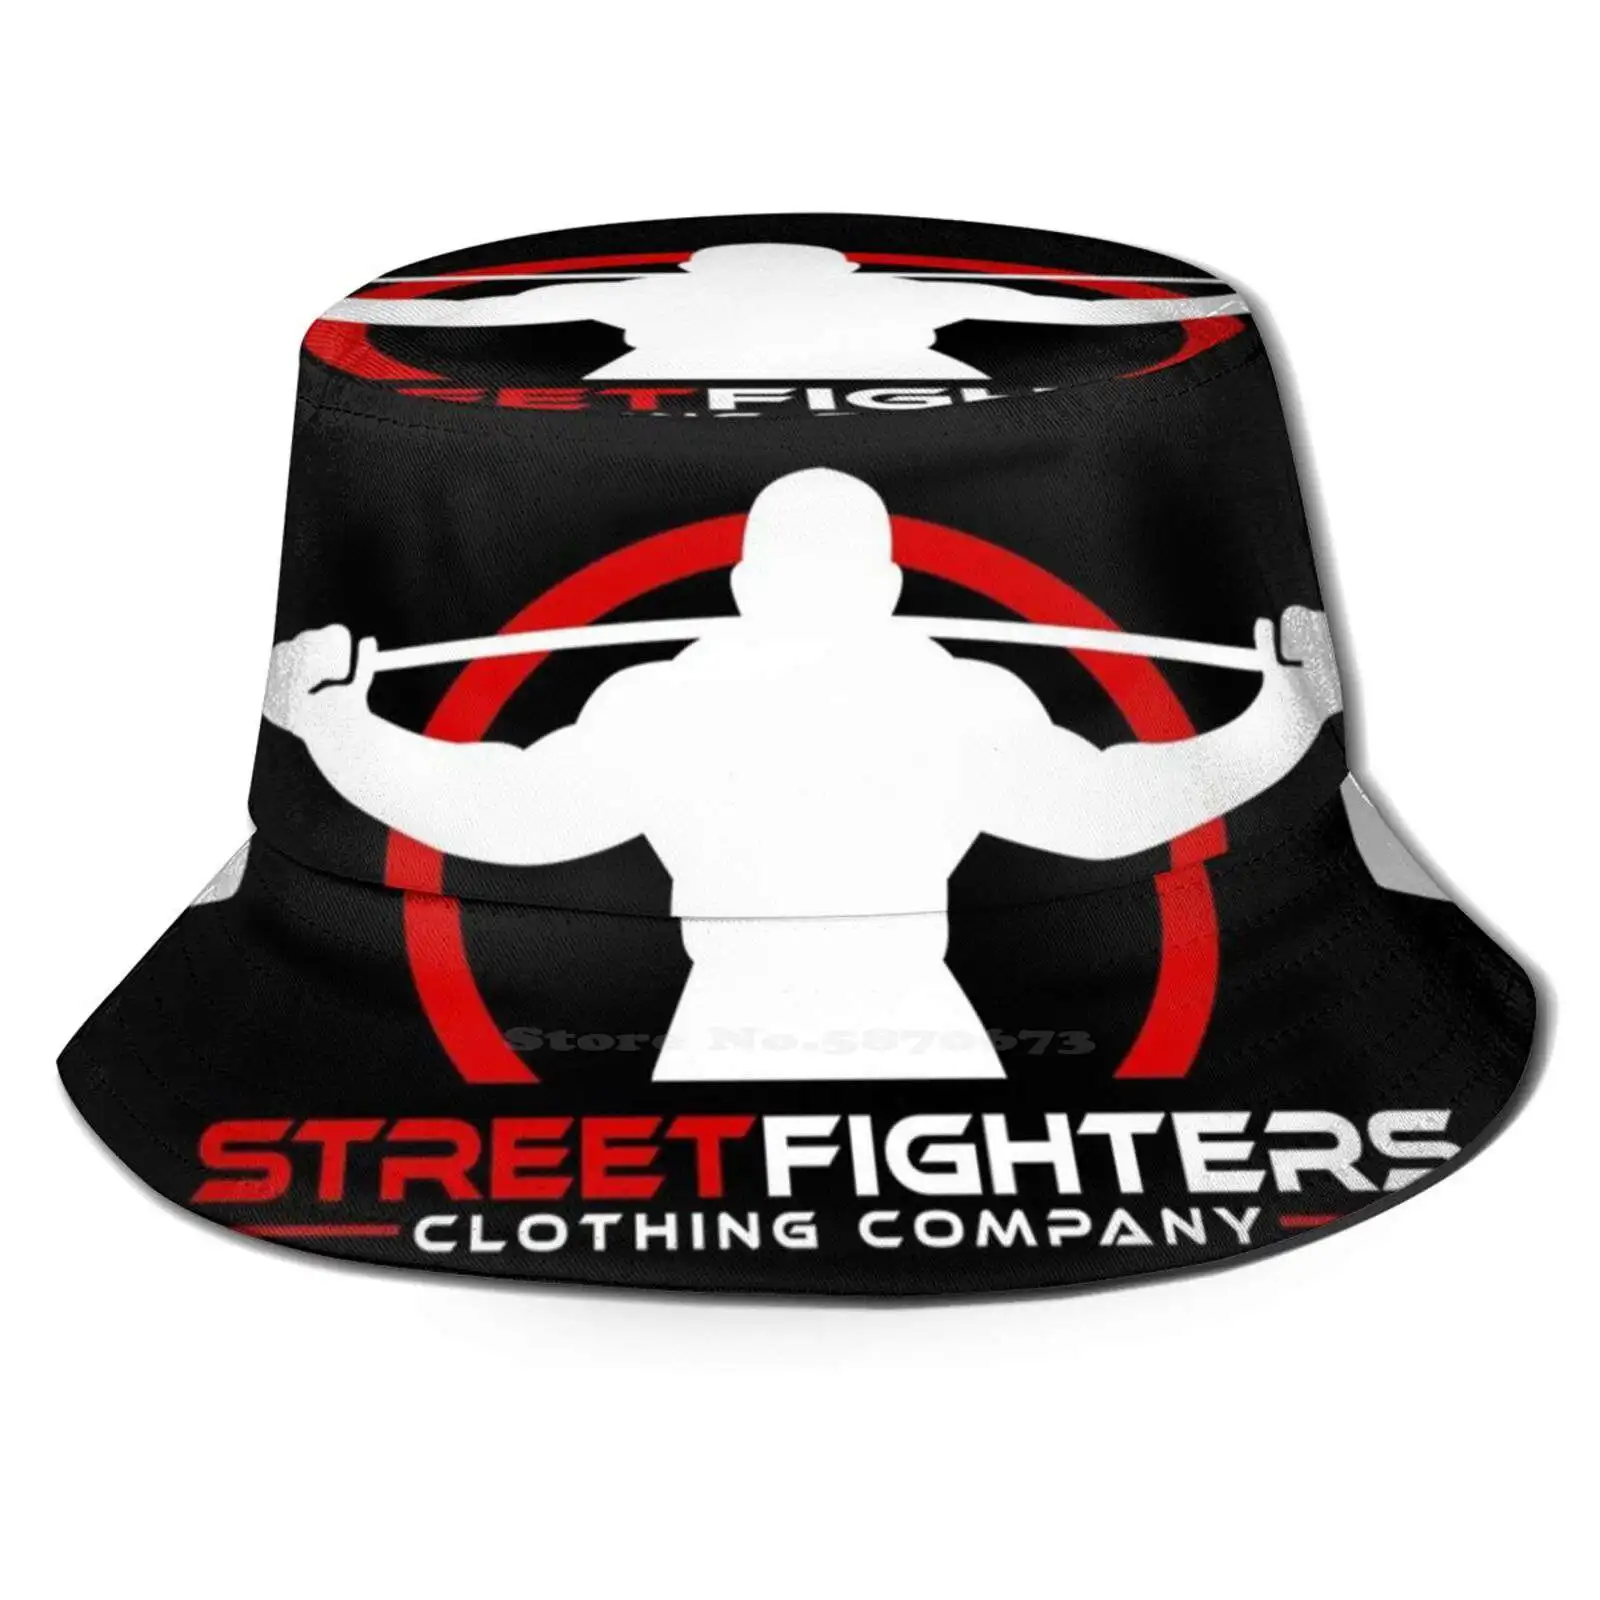 

Черная логотипа компании Streetfighter, забавные пляжные Панамы, уличные бойсеры, тренажерный зал, бодибилдинг, атлетика